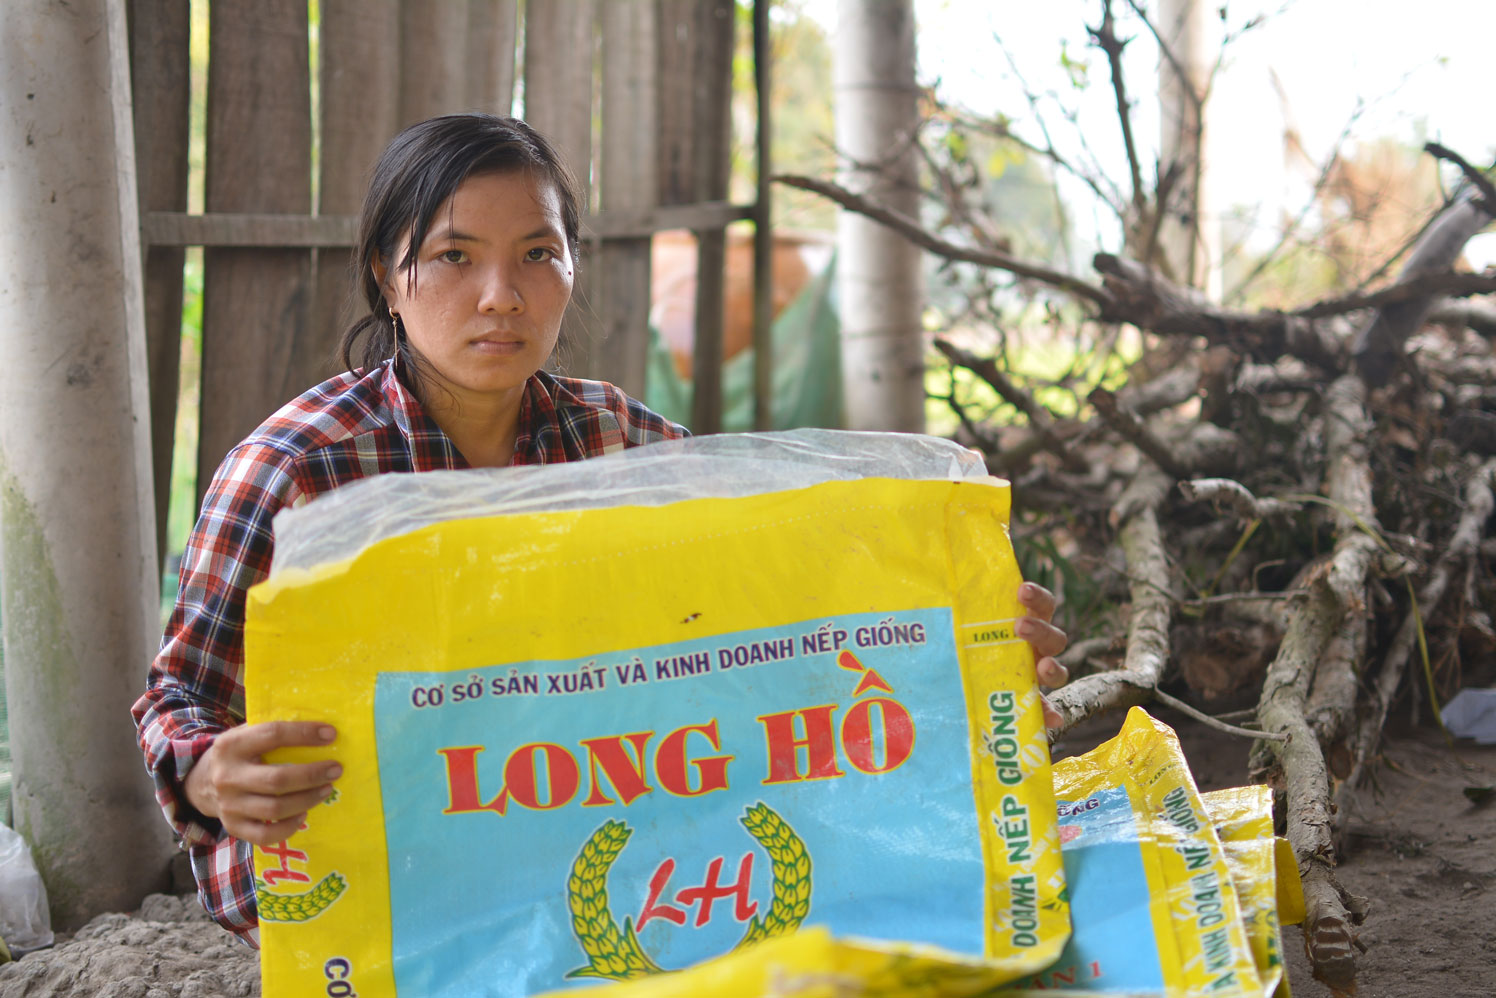  Gia đình anh Lê Văn Phước, ngụ ấp Hải Hưng, xã Nhơn Hòa, mua phải  giống lúa kém chất lượng của Cơ sở Sản xuất và Kinh doanh nếp giống Long Hồ